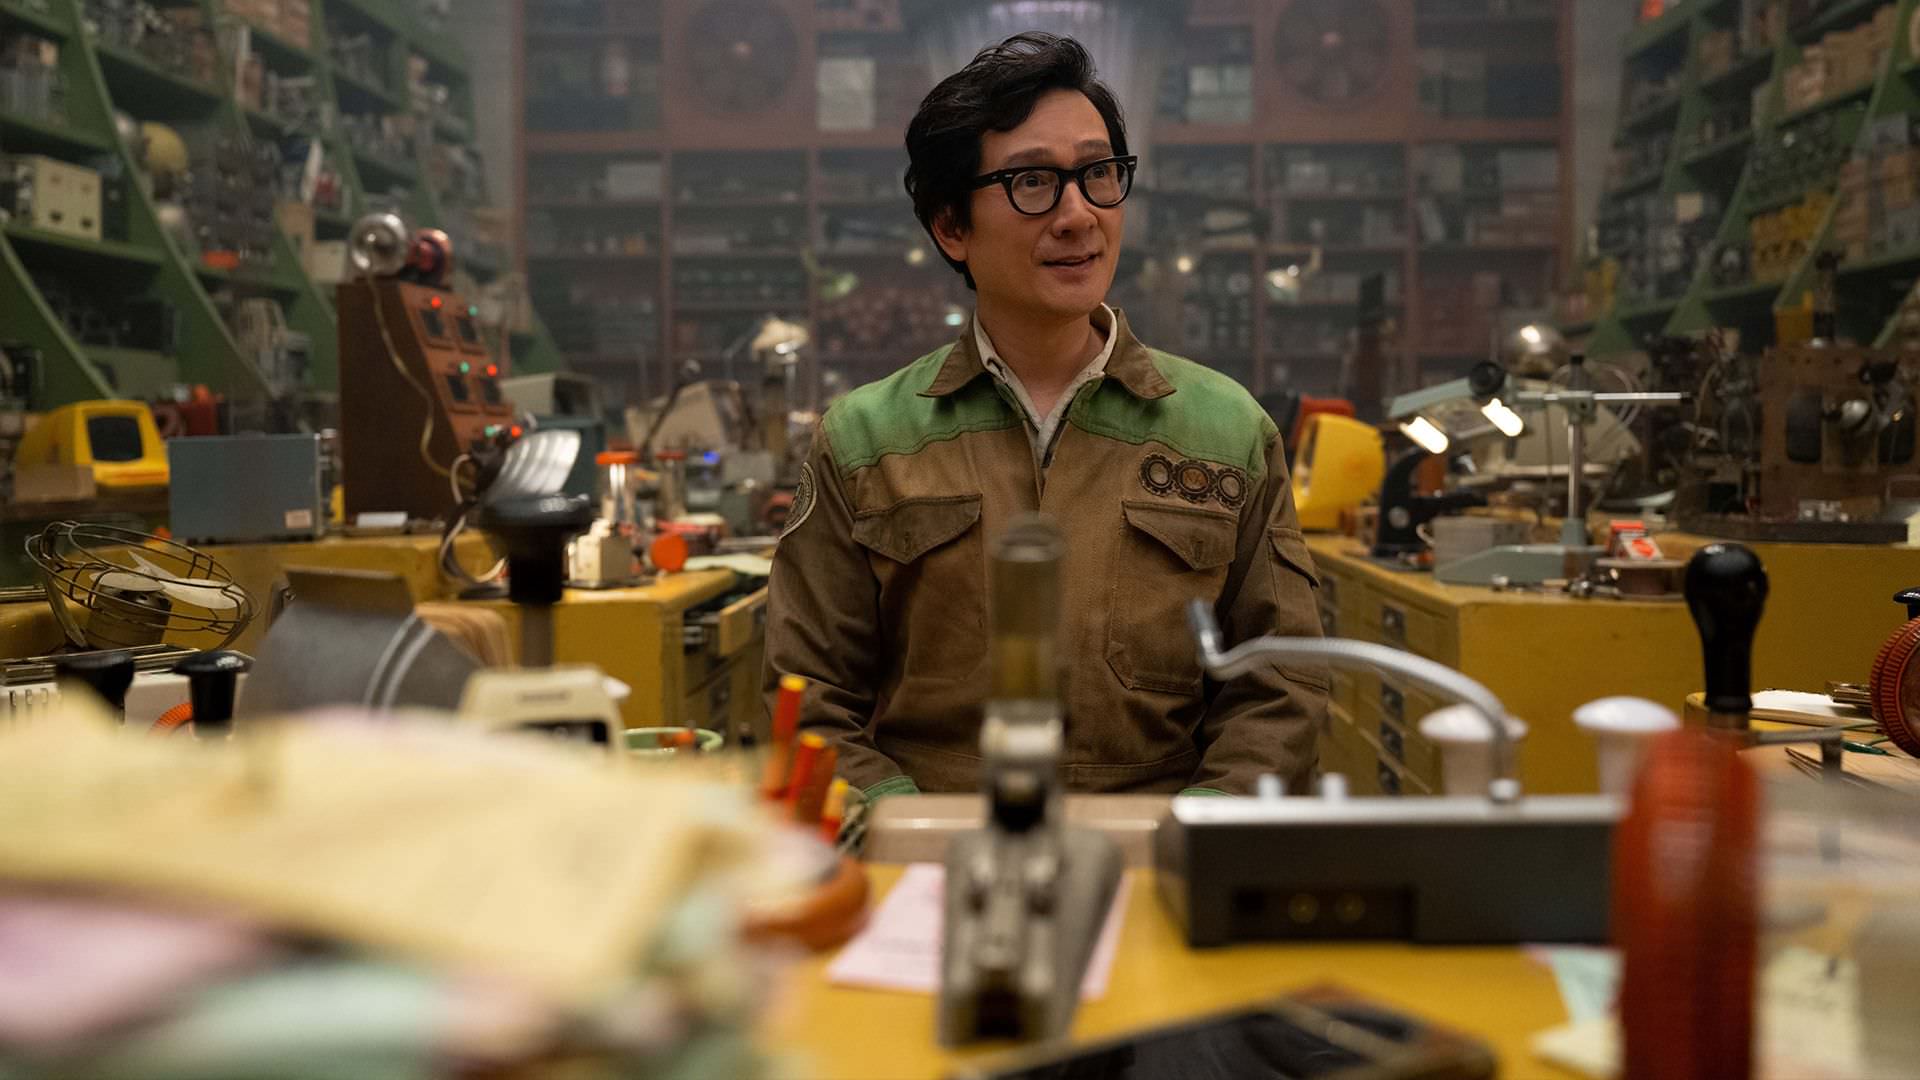 کی هوی کوان در نقش OB در قسمت اول فصل دوم سریال Loki 